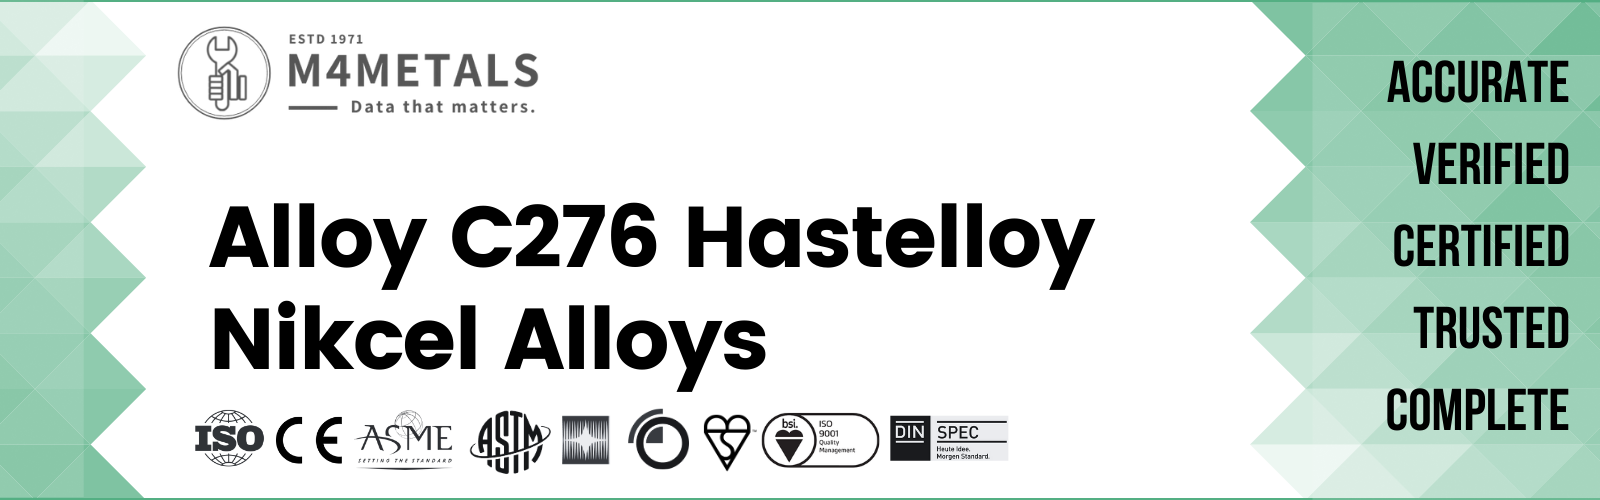 Hastelloy Alloy C276